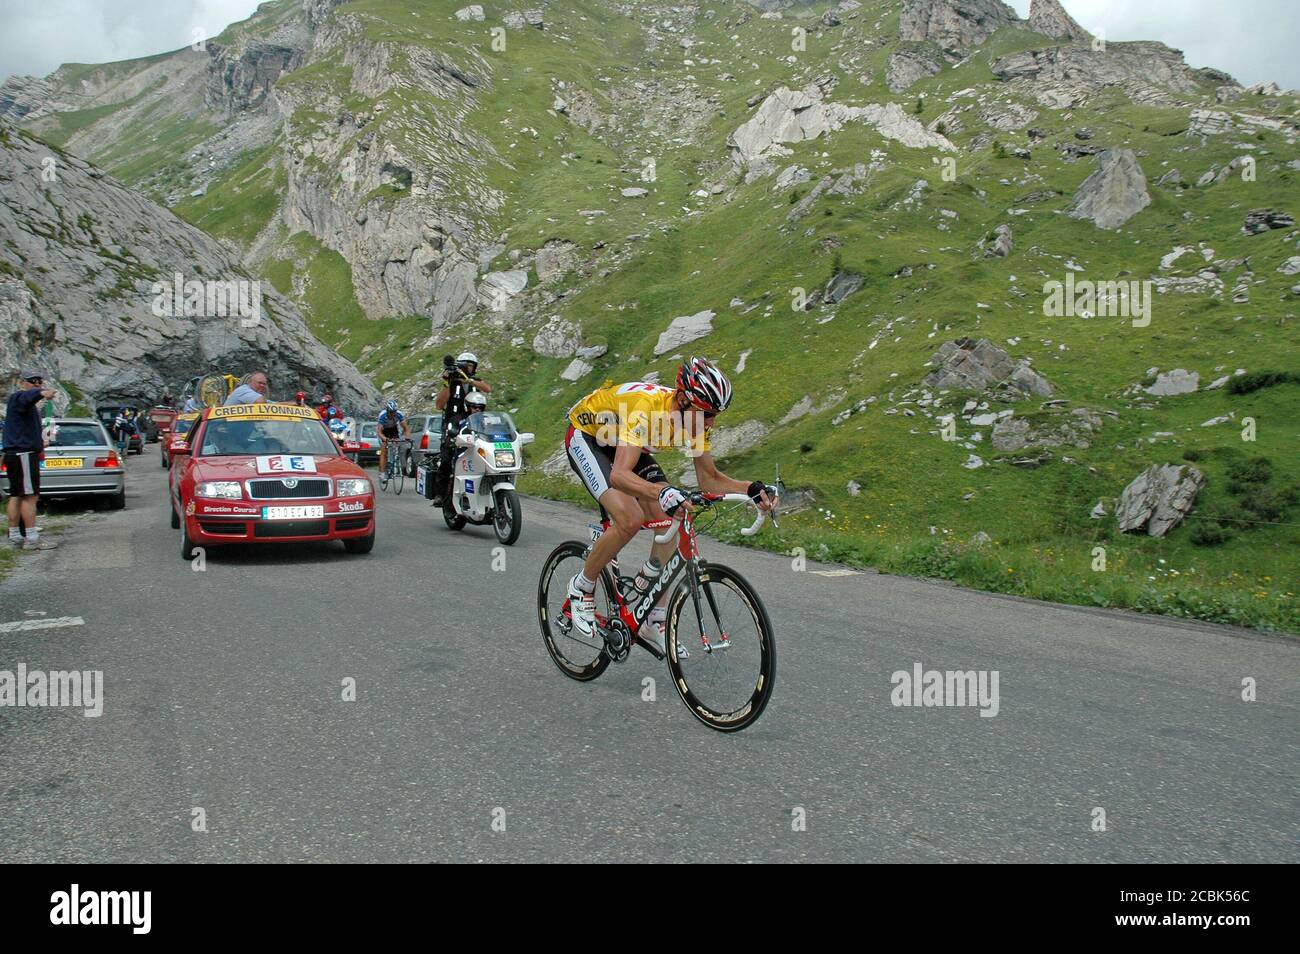 Jens Voigt, der deutsche Radler (gelbes Trikot), macht sich bei der Tour de France 2005 den steilen Cormet de Roselend in den französischen Alpen auf den Weg. Stockfoto